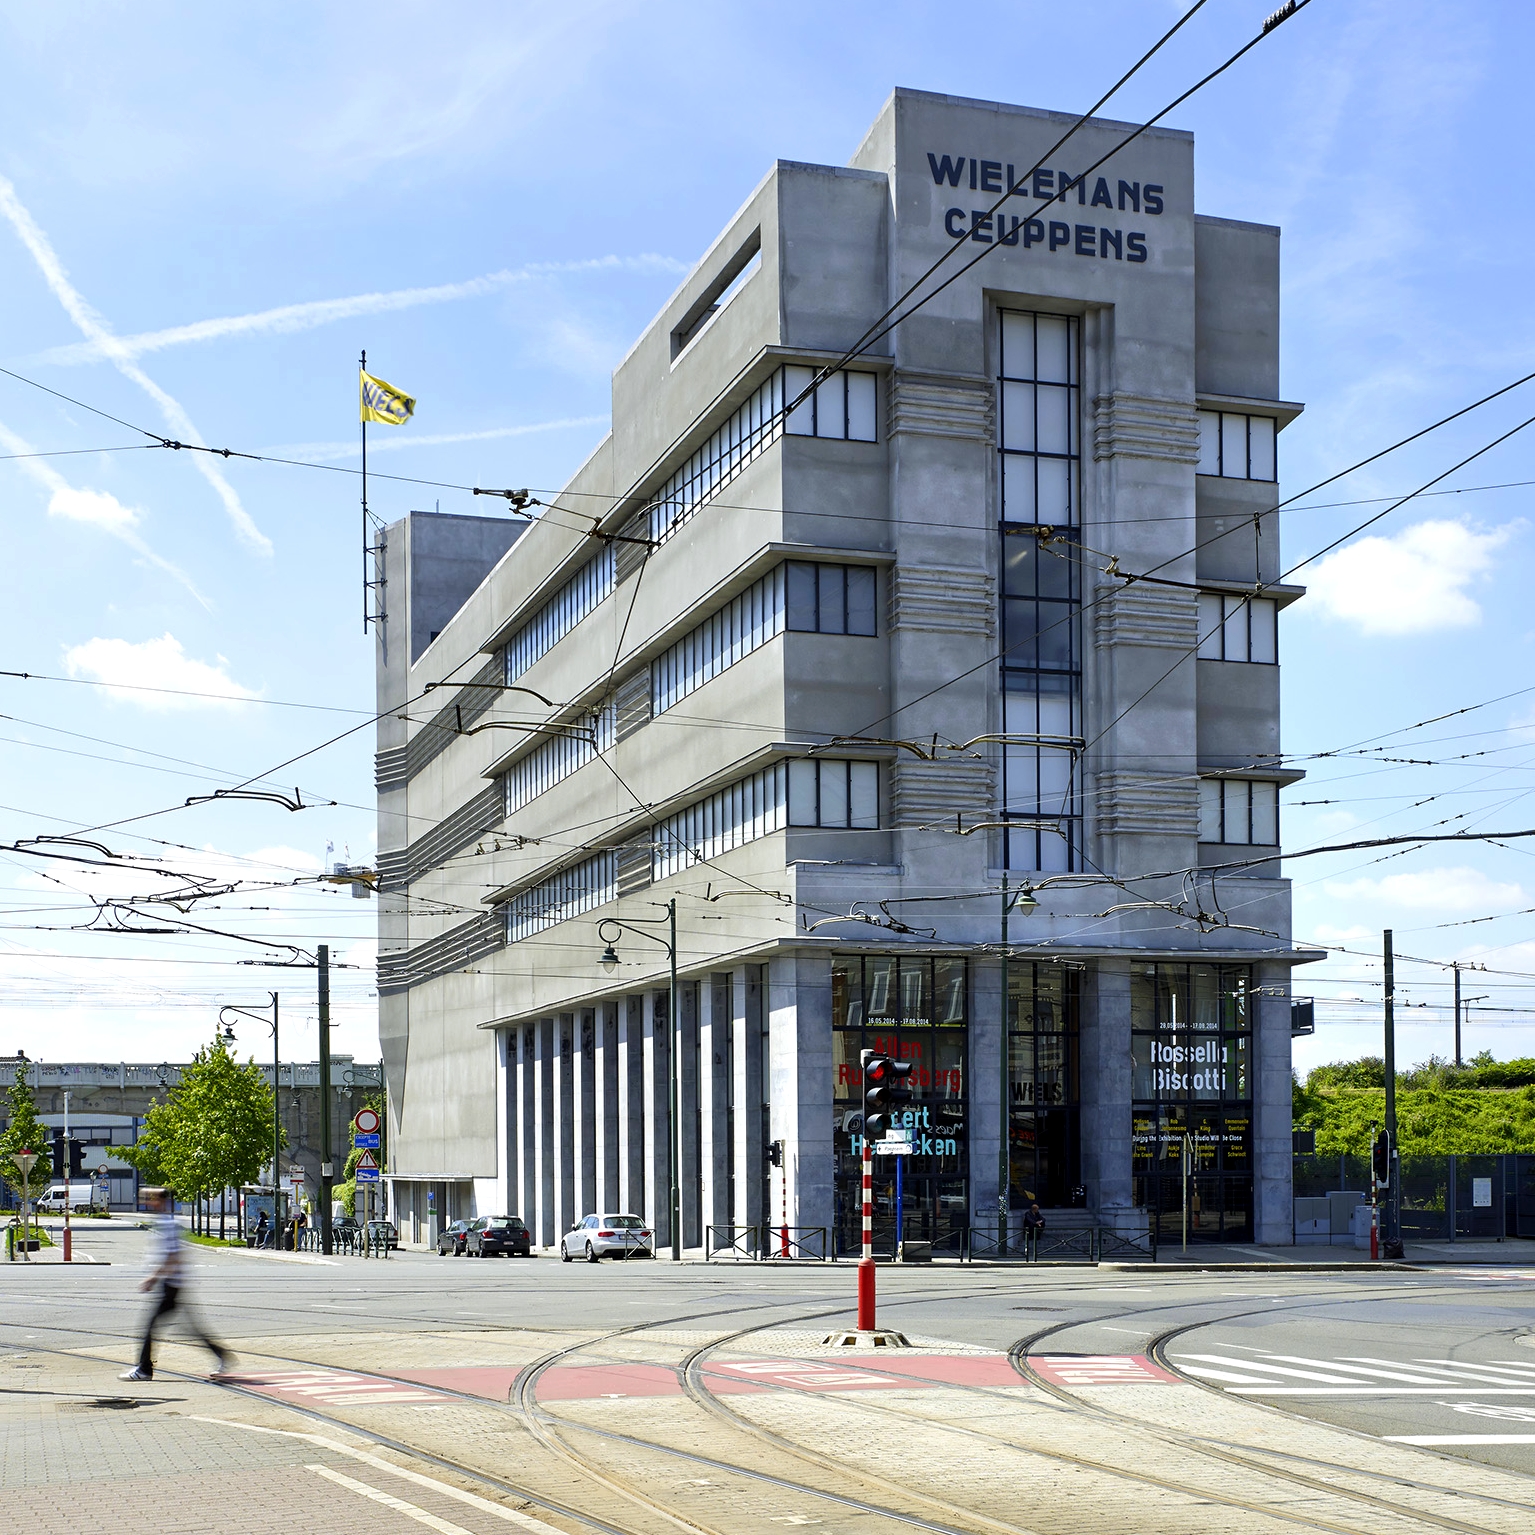 Wiels - Centrum voor hedendaagse kunst